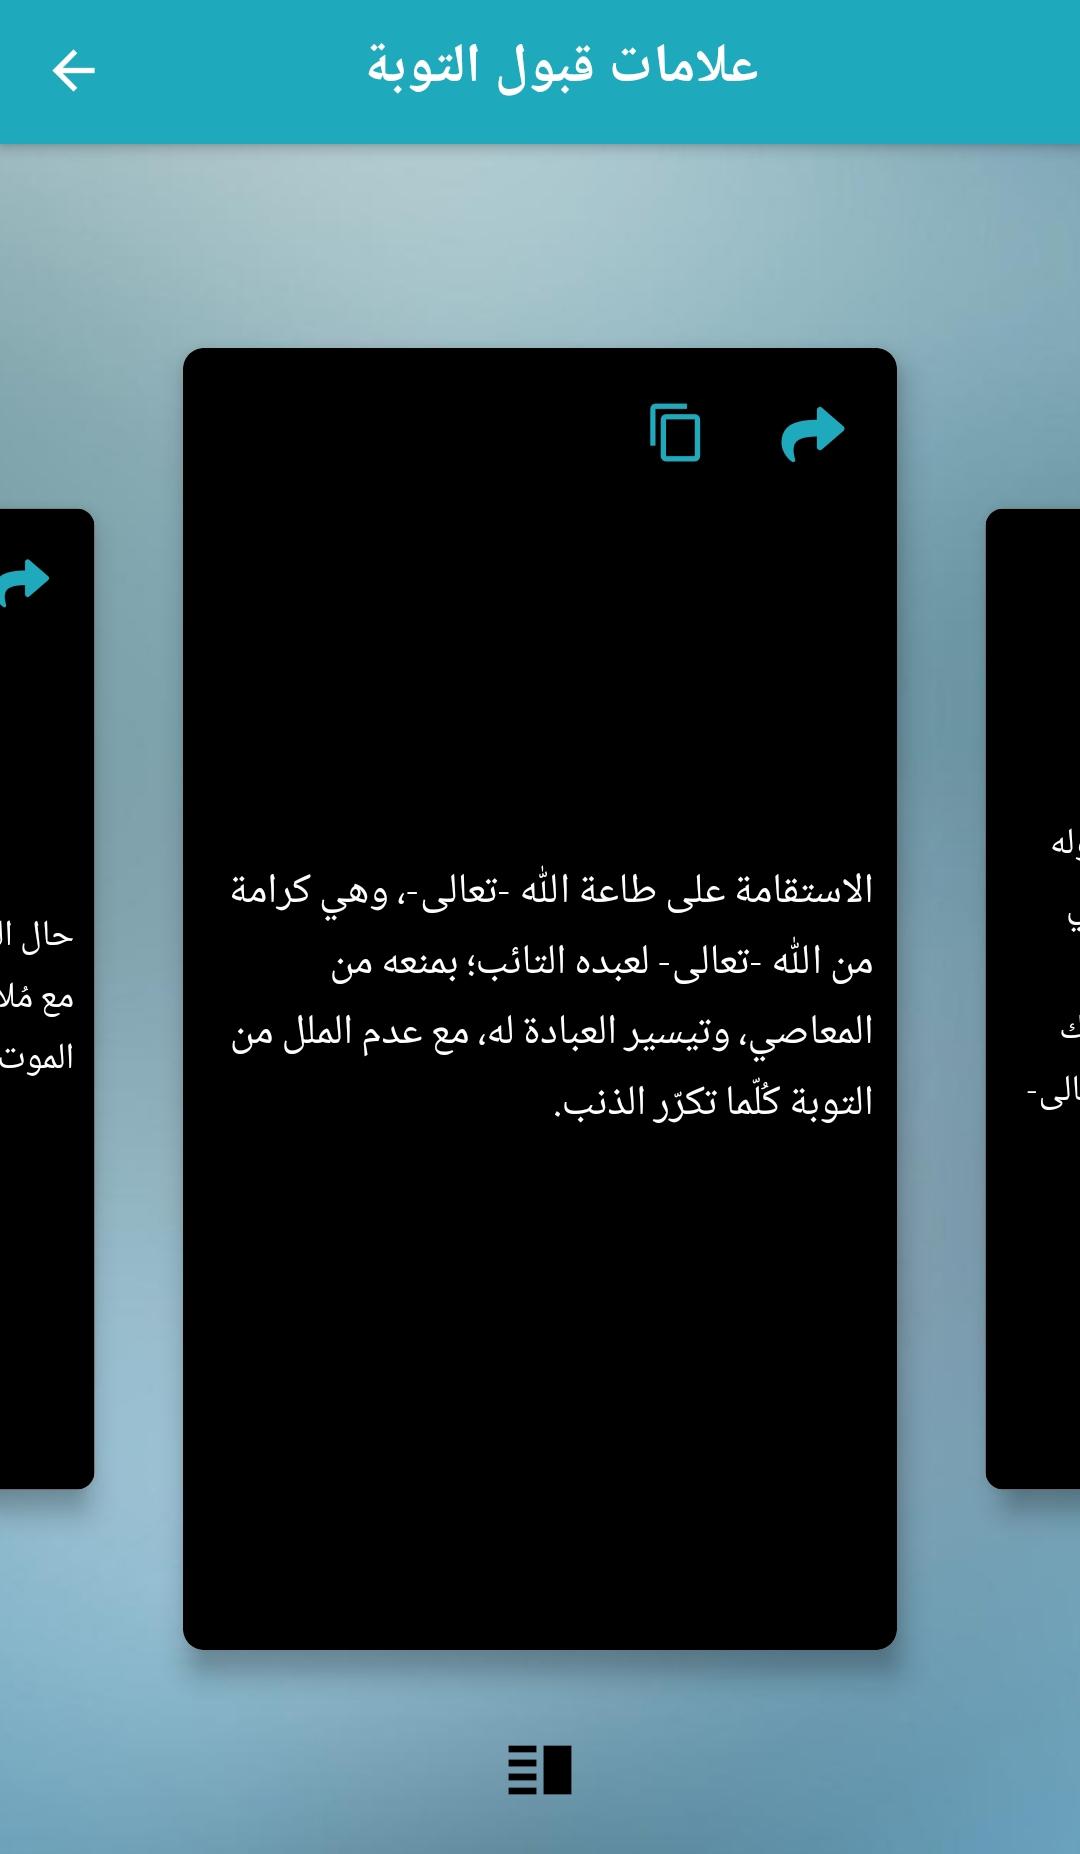 كيفية التوبة والرجوع إلى الله APK für Android herunterladen